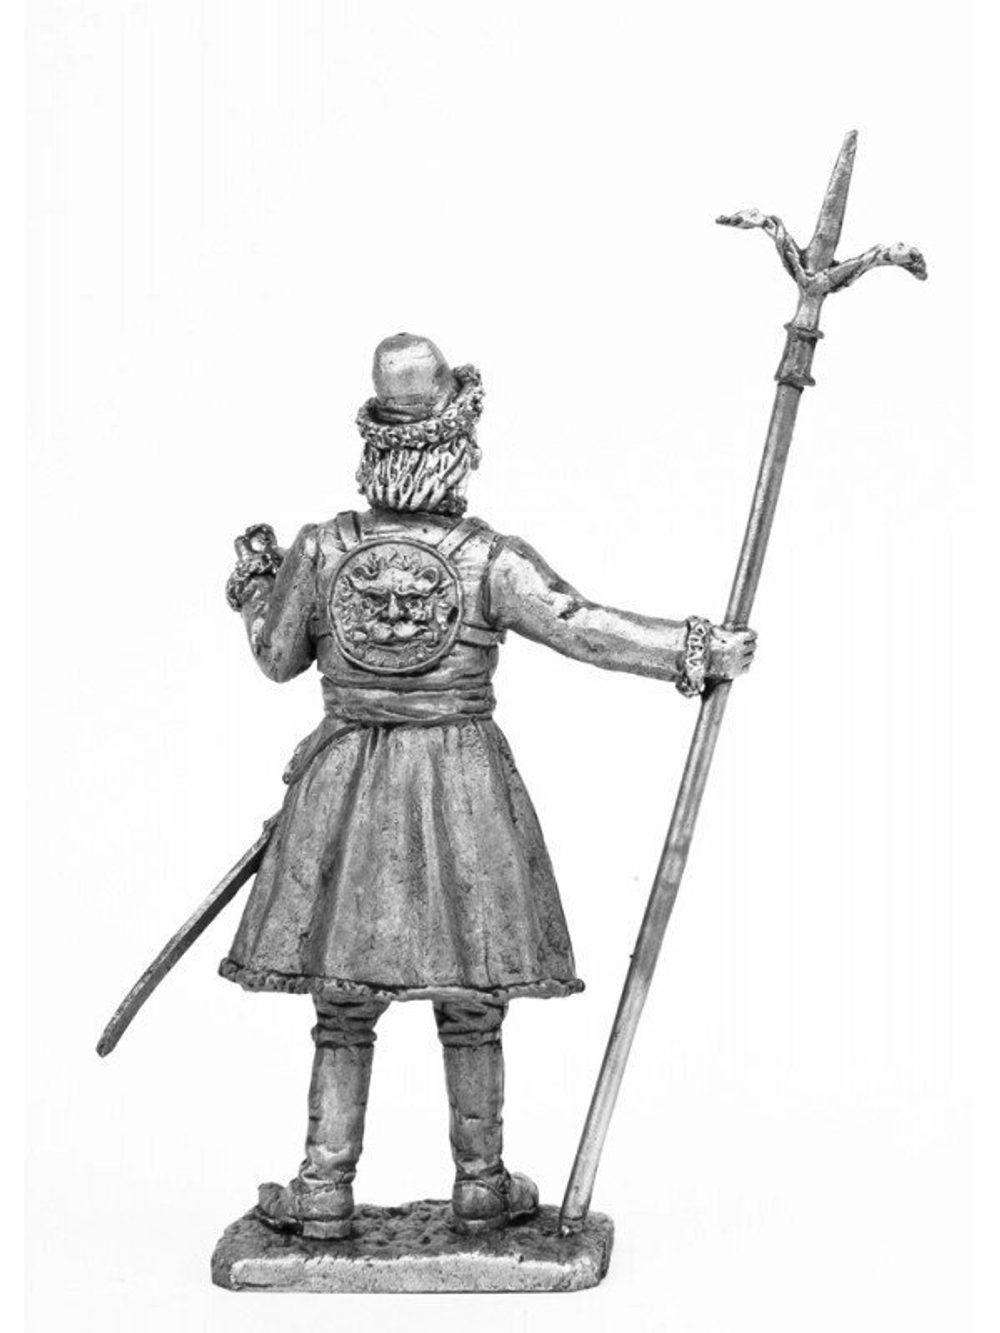 Оловянный солдатик Артиллерист новоприборных полков 1700 год